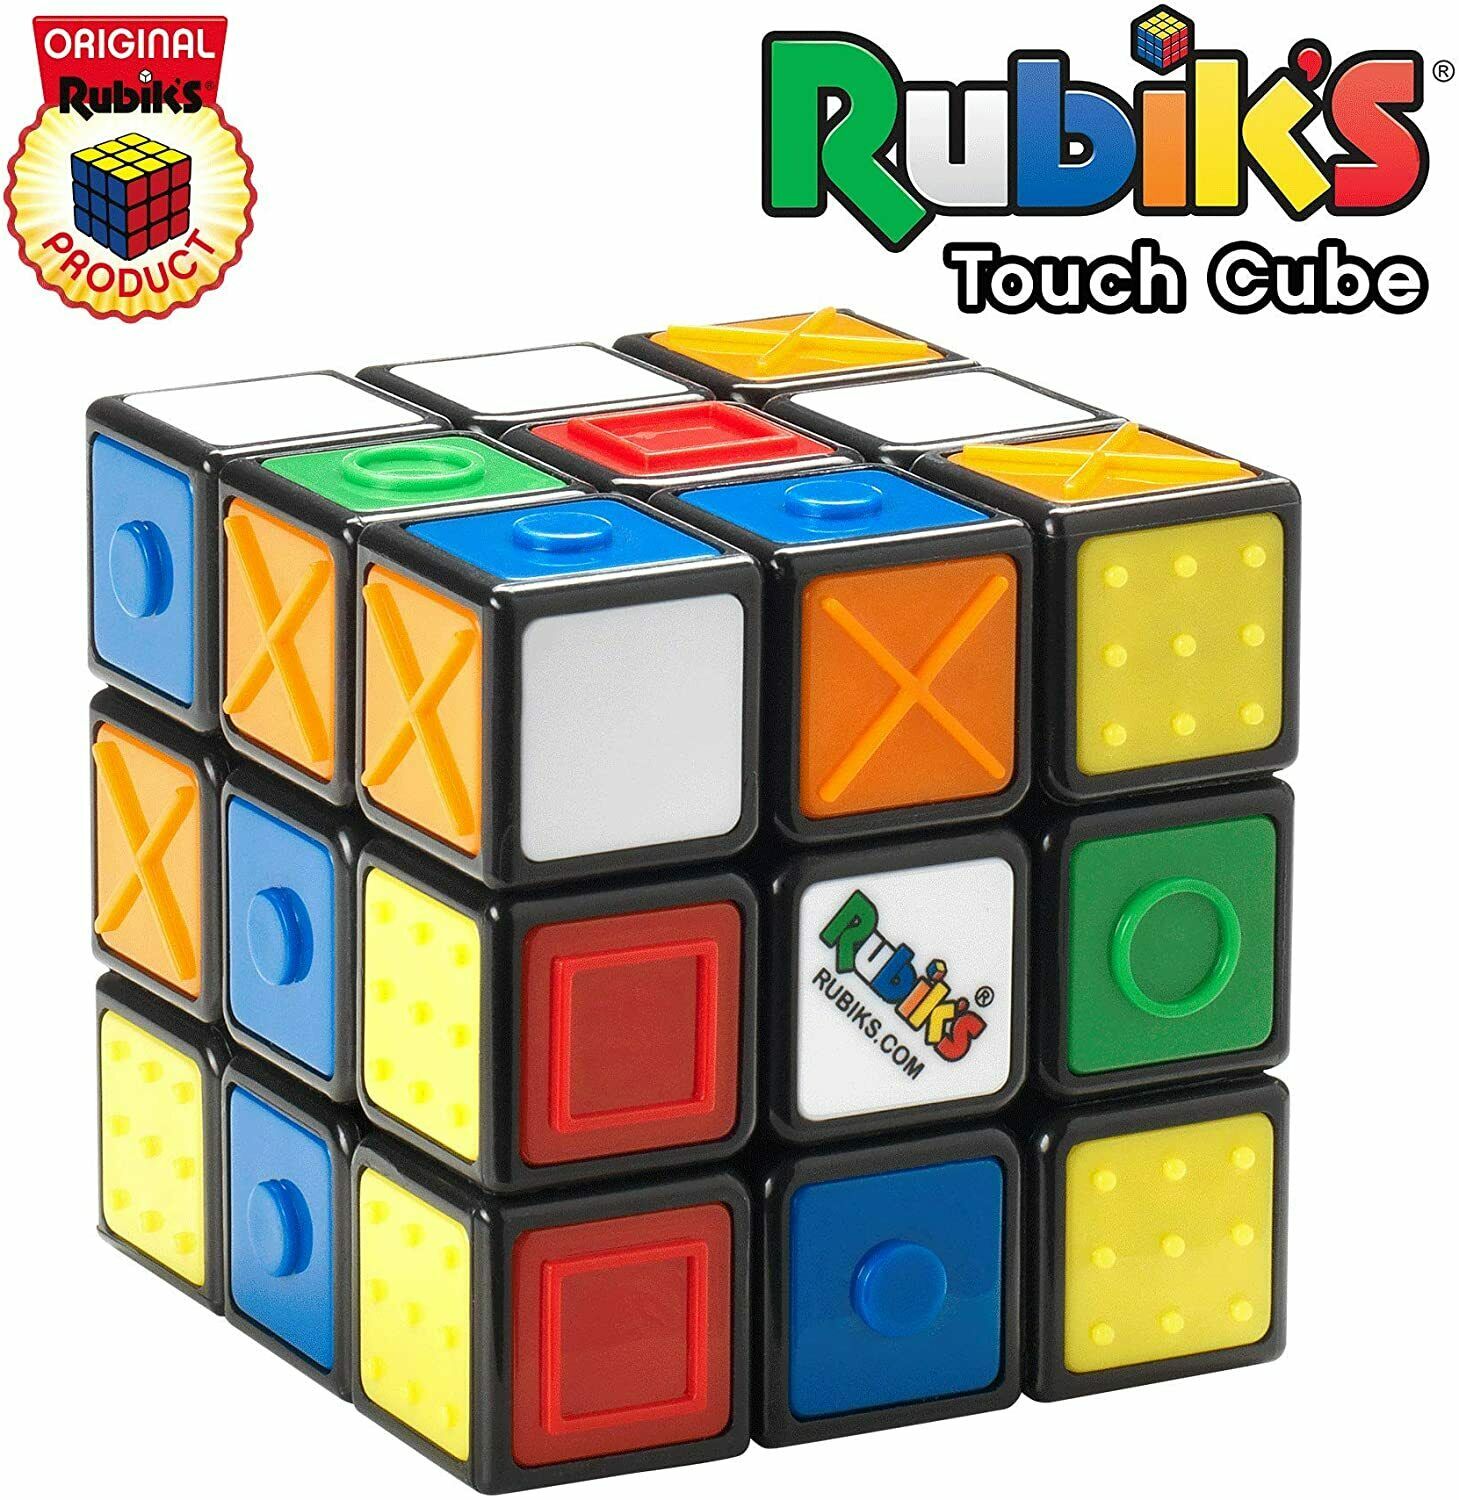 GAMES CUBO DI RUBIK / RUBIK'S CUBE (3X3) SENSORY